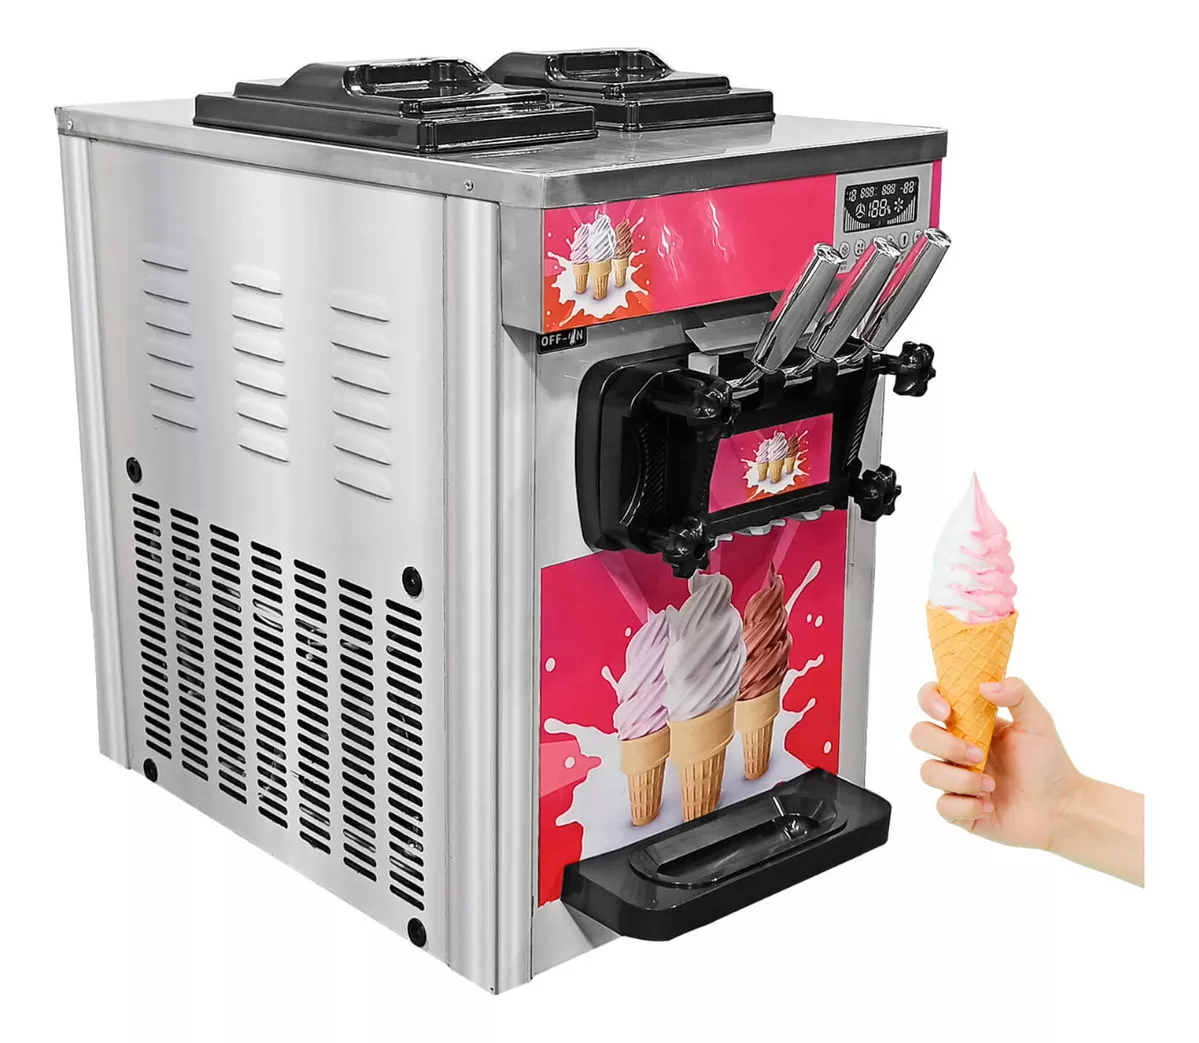 Primeira imagem para pesquisa de maquina sorvete taylor usada